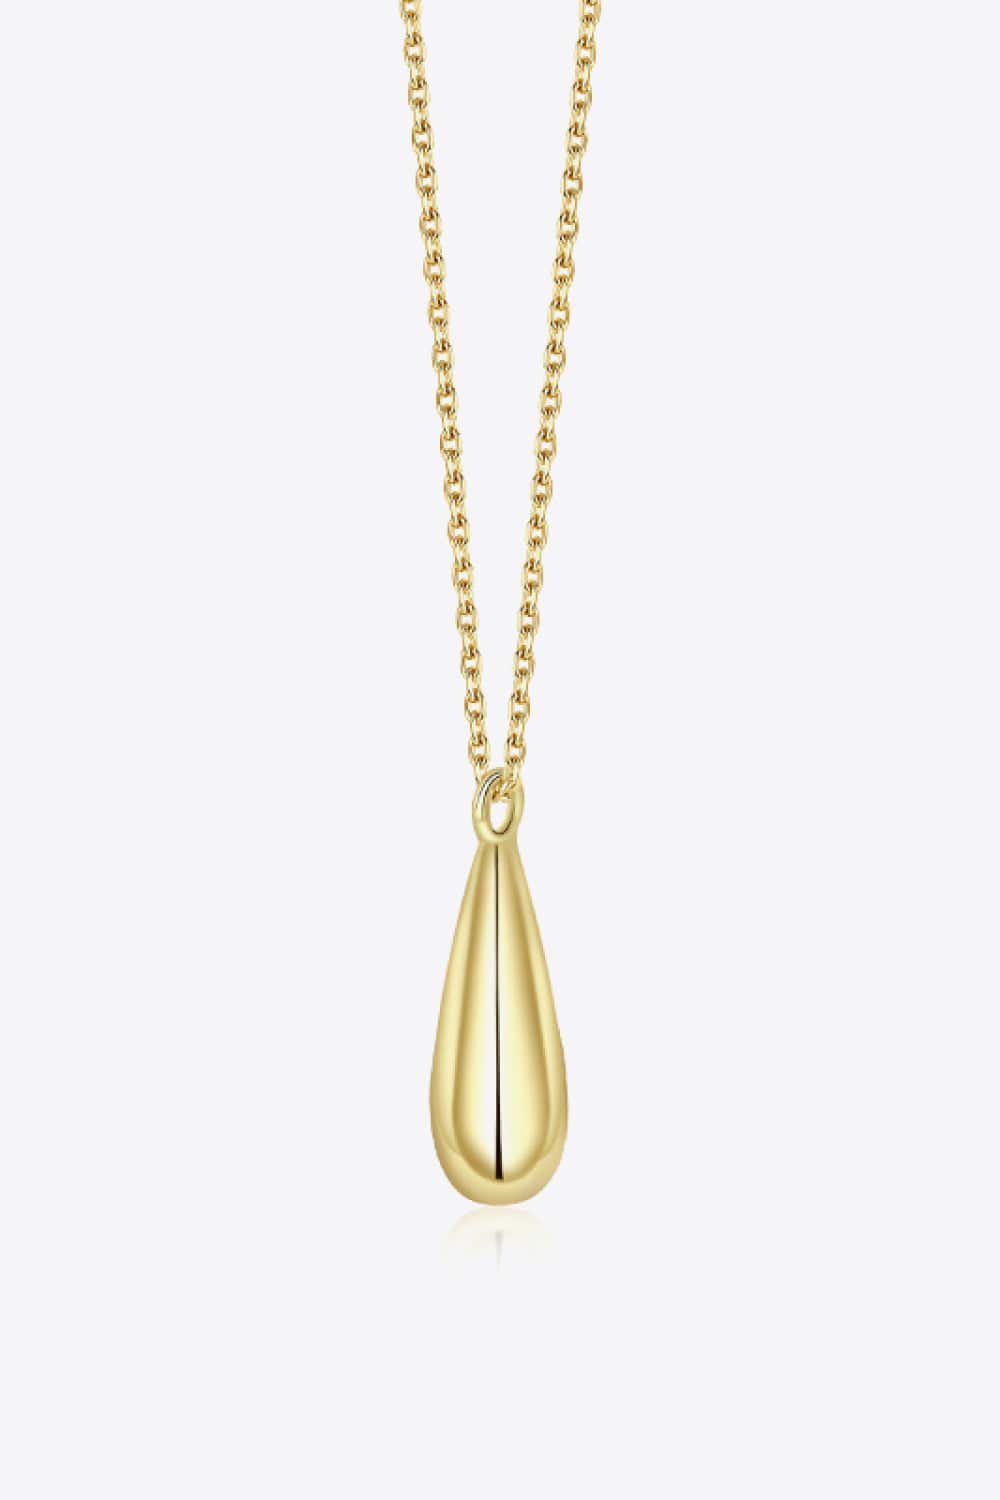 18K Gold-Plated Pendant Necklace - Body By J'ne